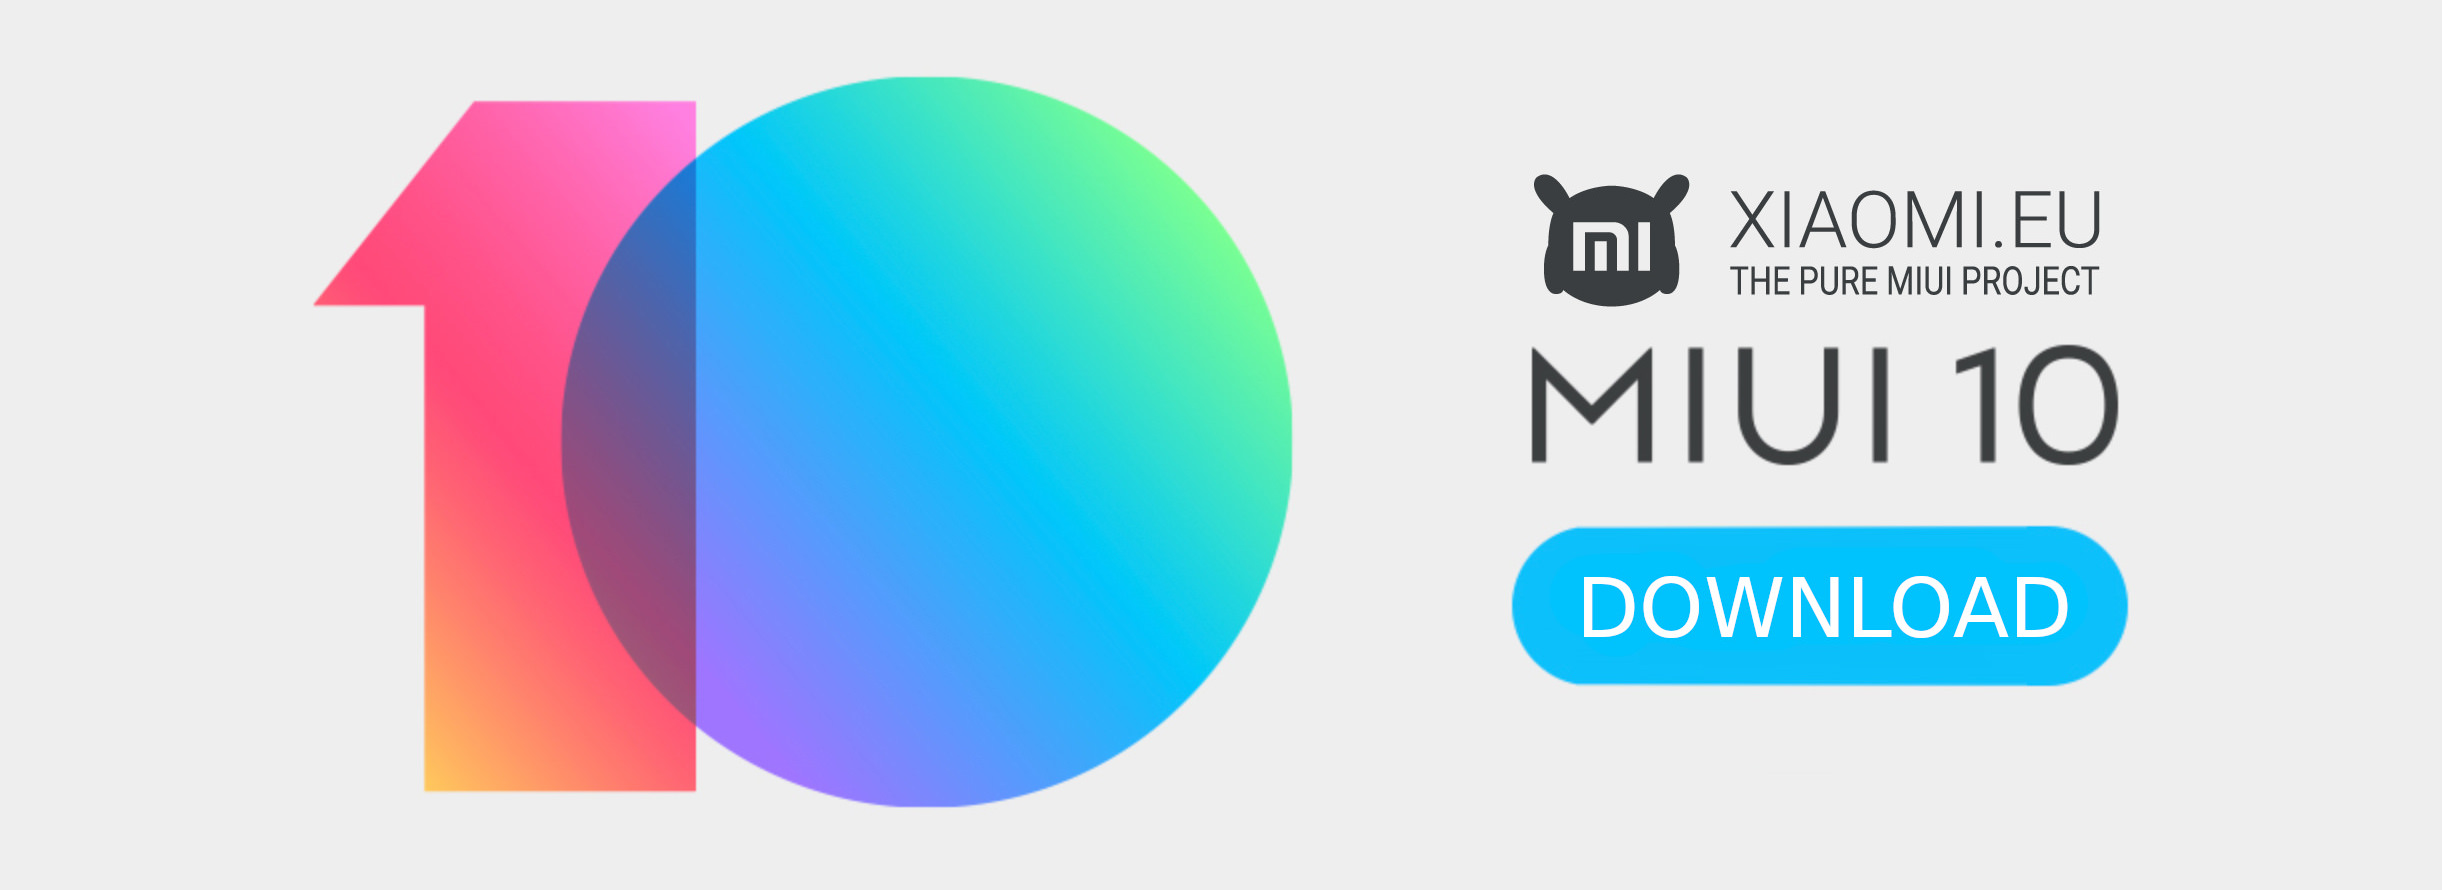 Xiaomi Eu Miui 10 8.7.26 Developer Rom Weekly Update (Redmi Note 5/Pro/ai)